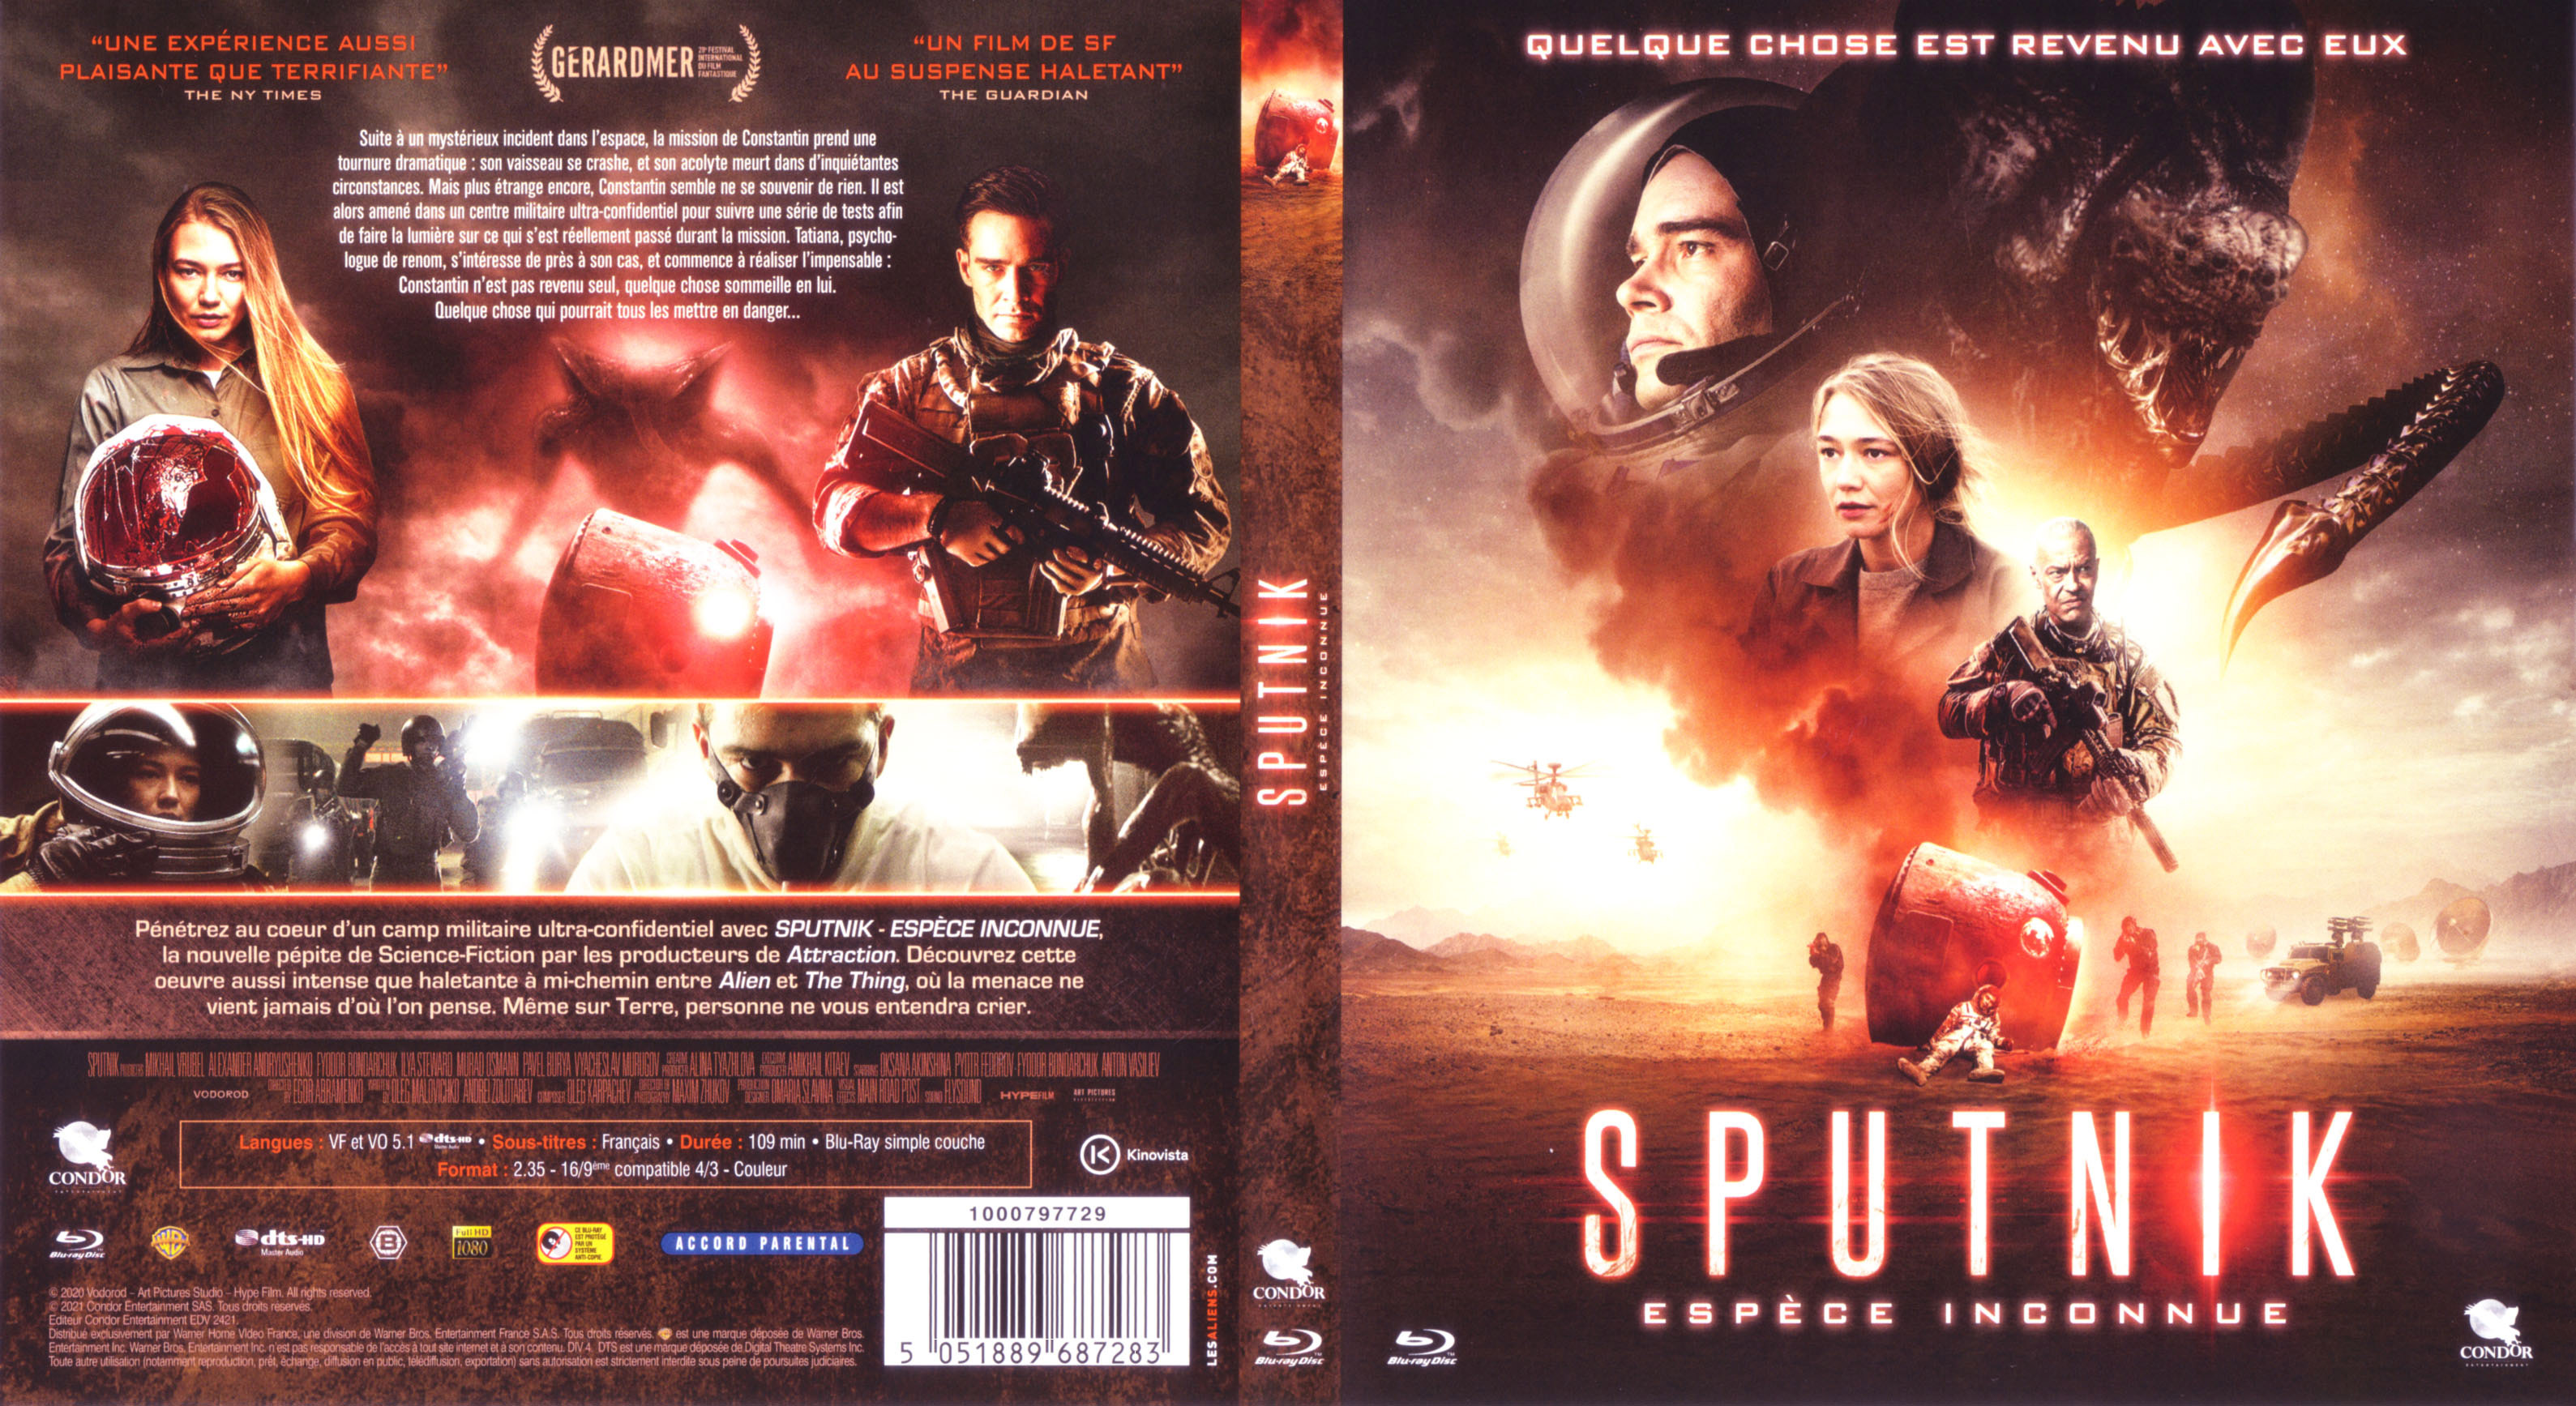 Jaquette DVD Sputnik, espece inconnue (BLU-RAY)